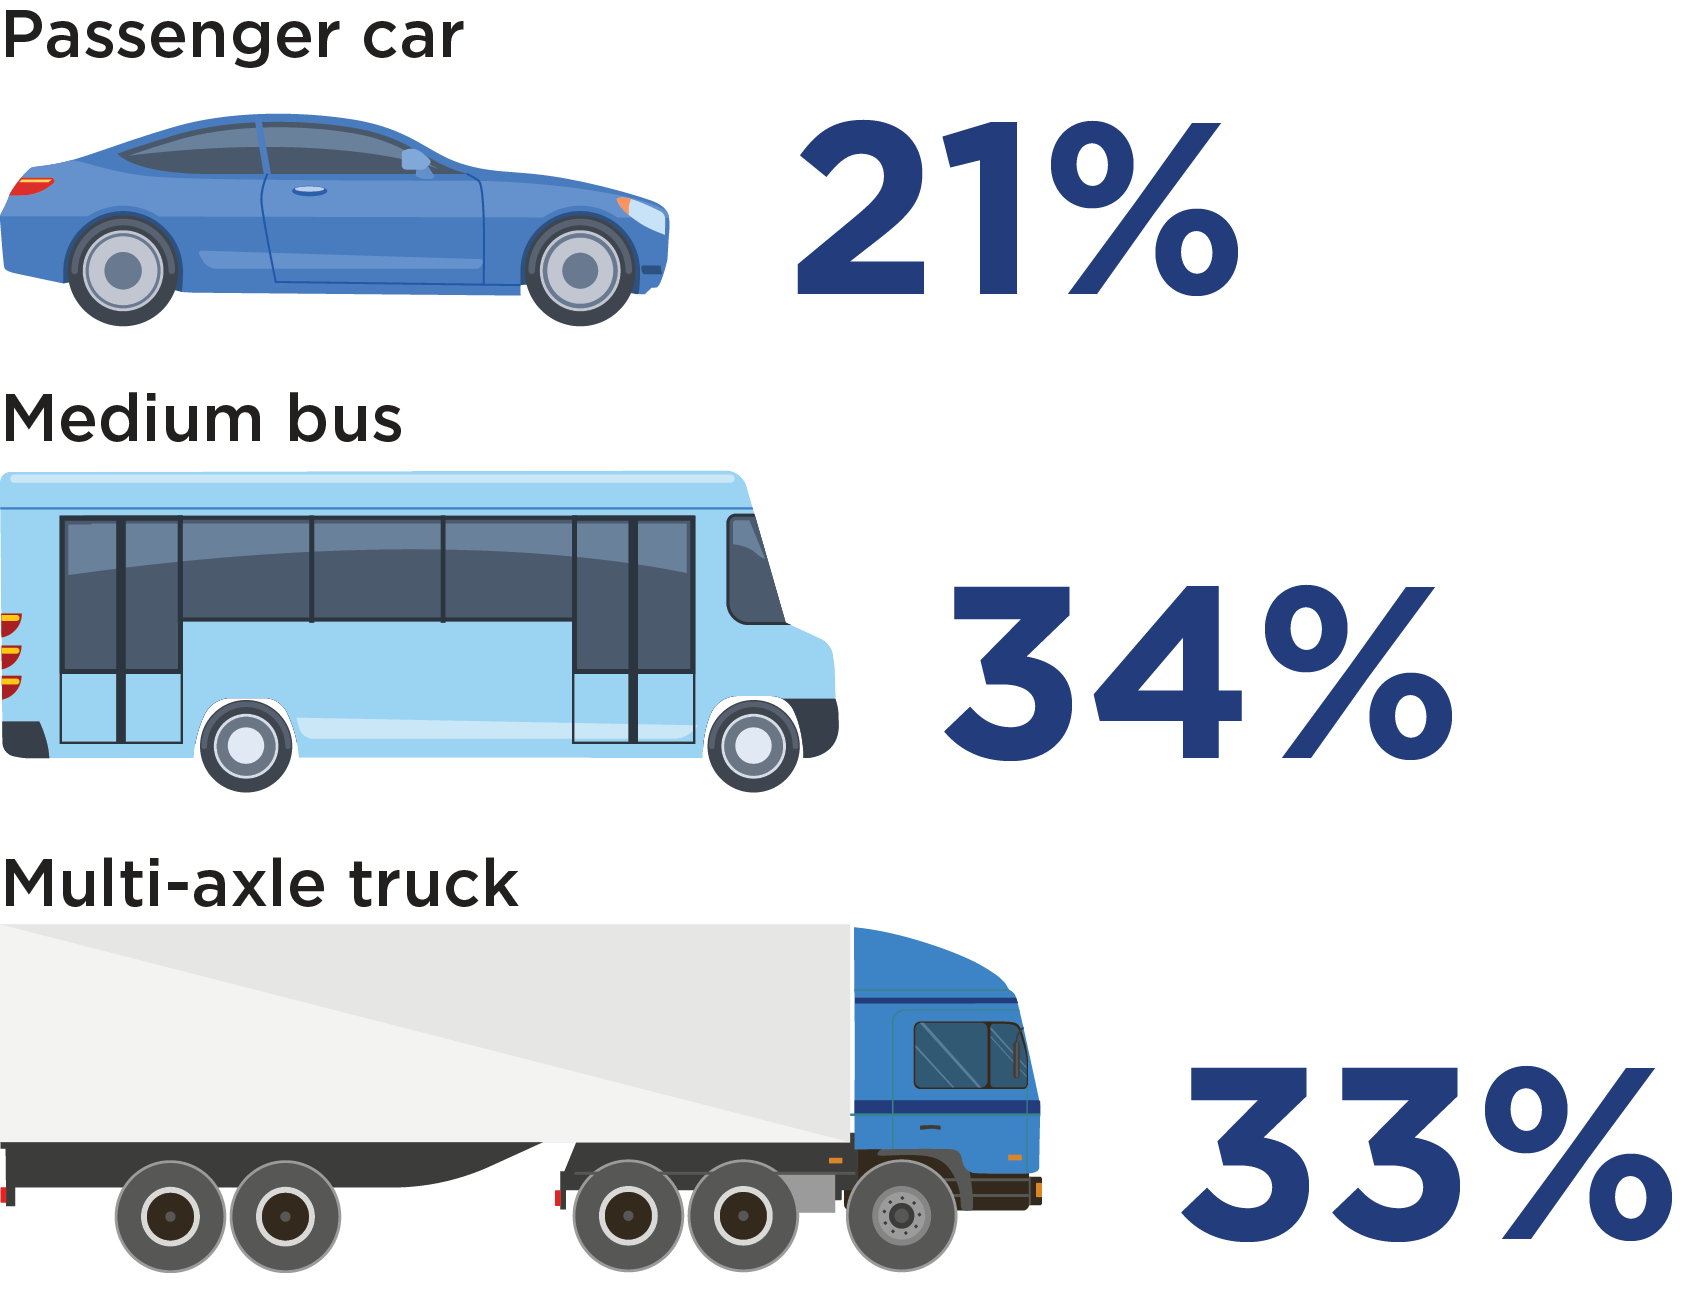 Los turismos ahorraron el 21% de los costes operativos del vehículo.  Los autobuses medianos ahorraron un 34%;  Los camiones de varios ejes ahorraron un 33%.